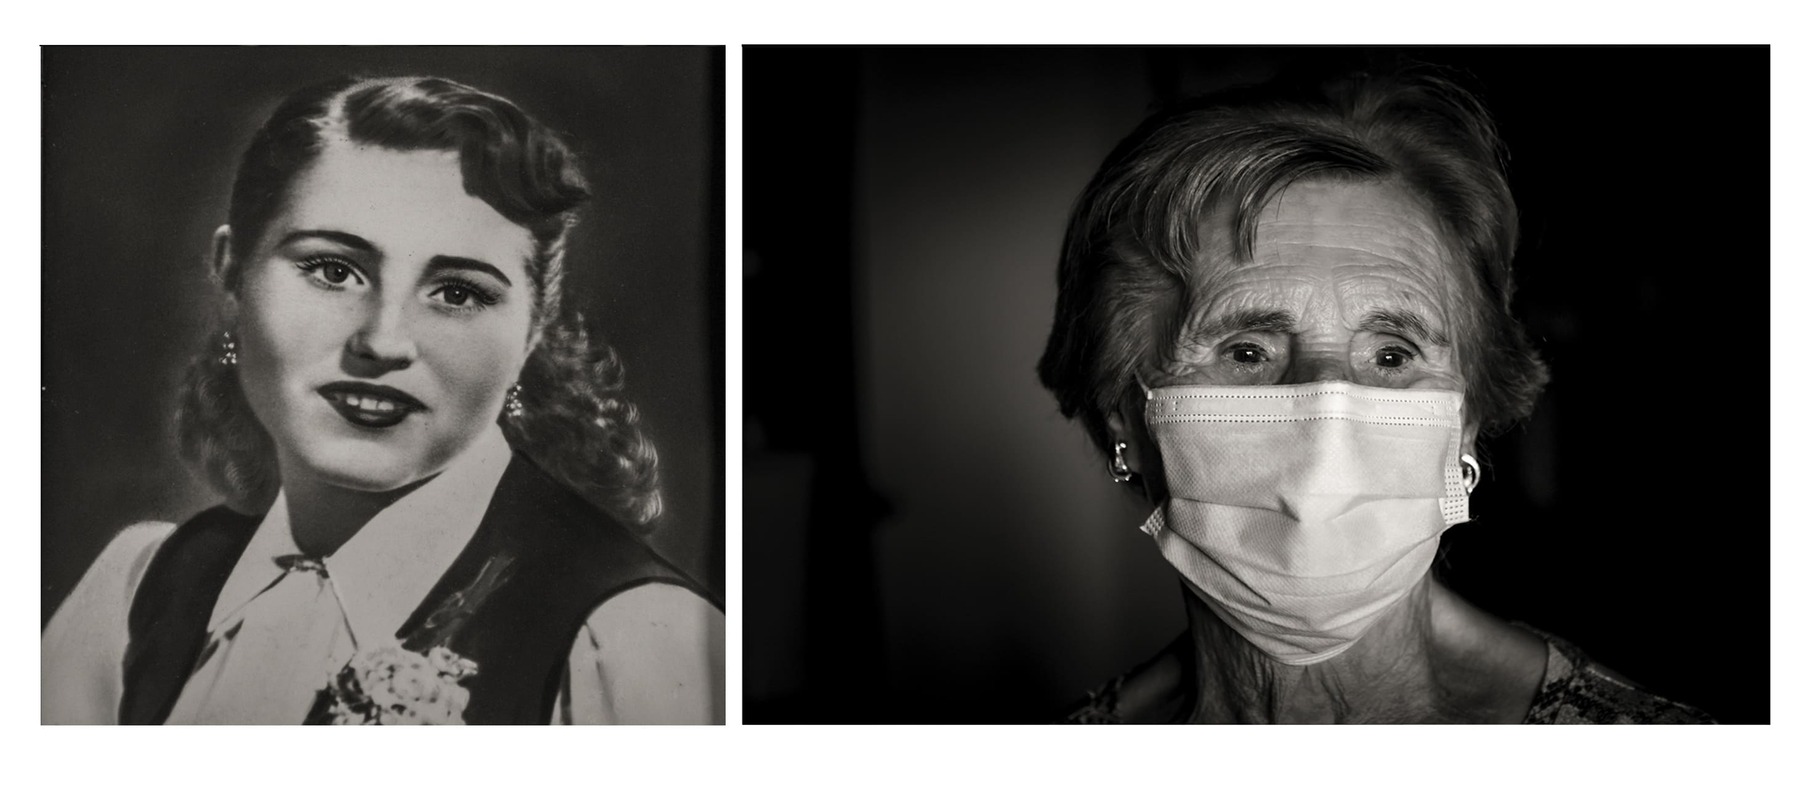 Premio fotografía "José Caramillo" 2021: José López Jiménez , "Pandemia, momentos de soledad"